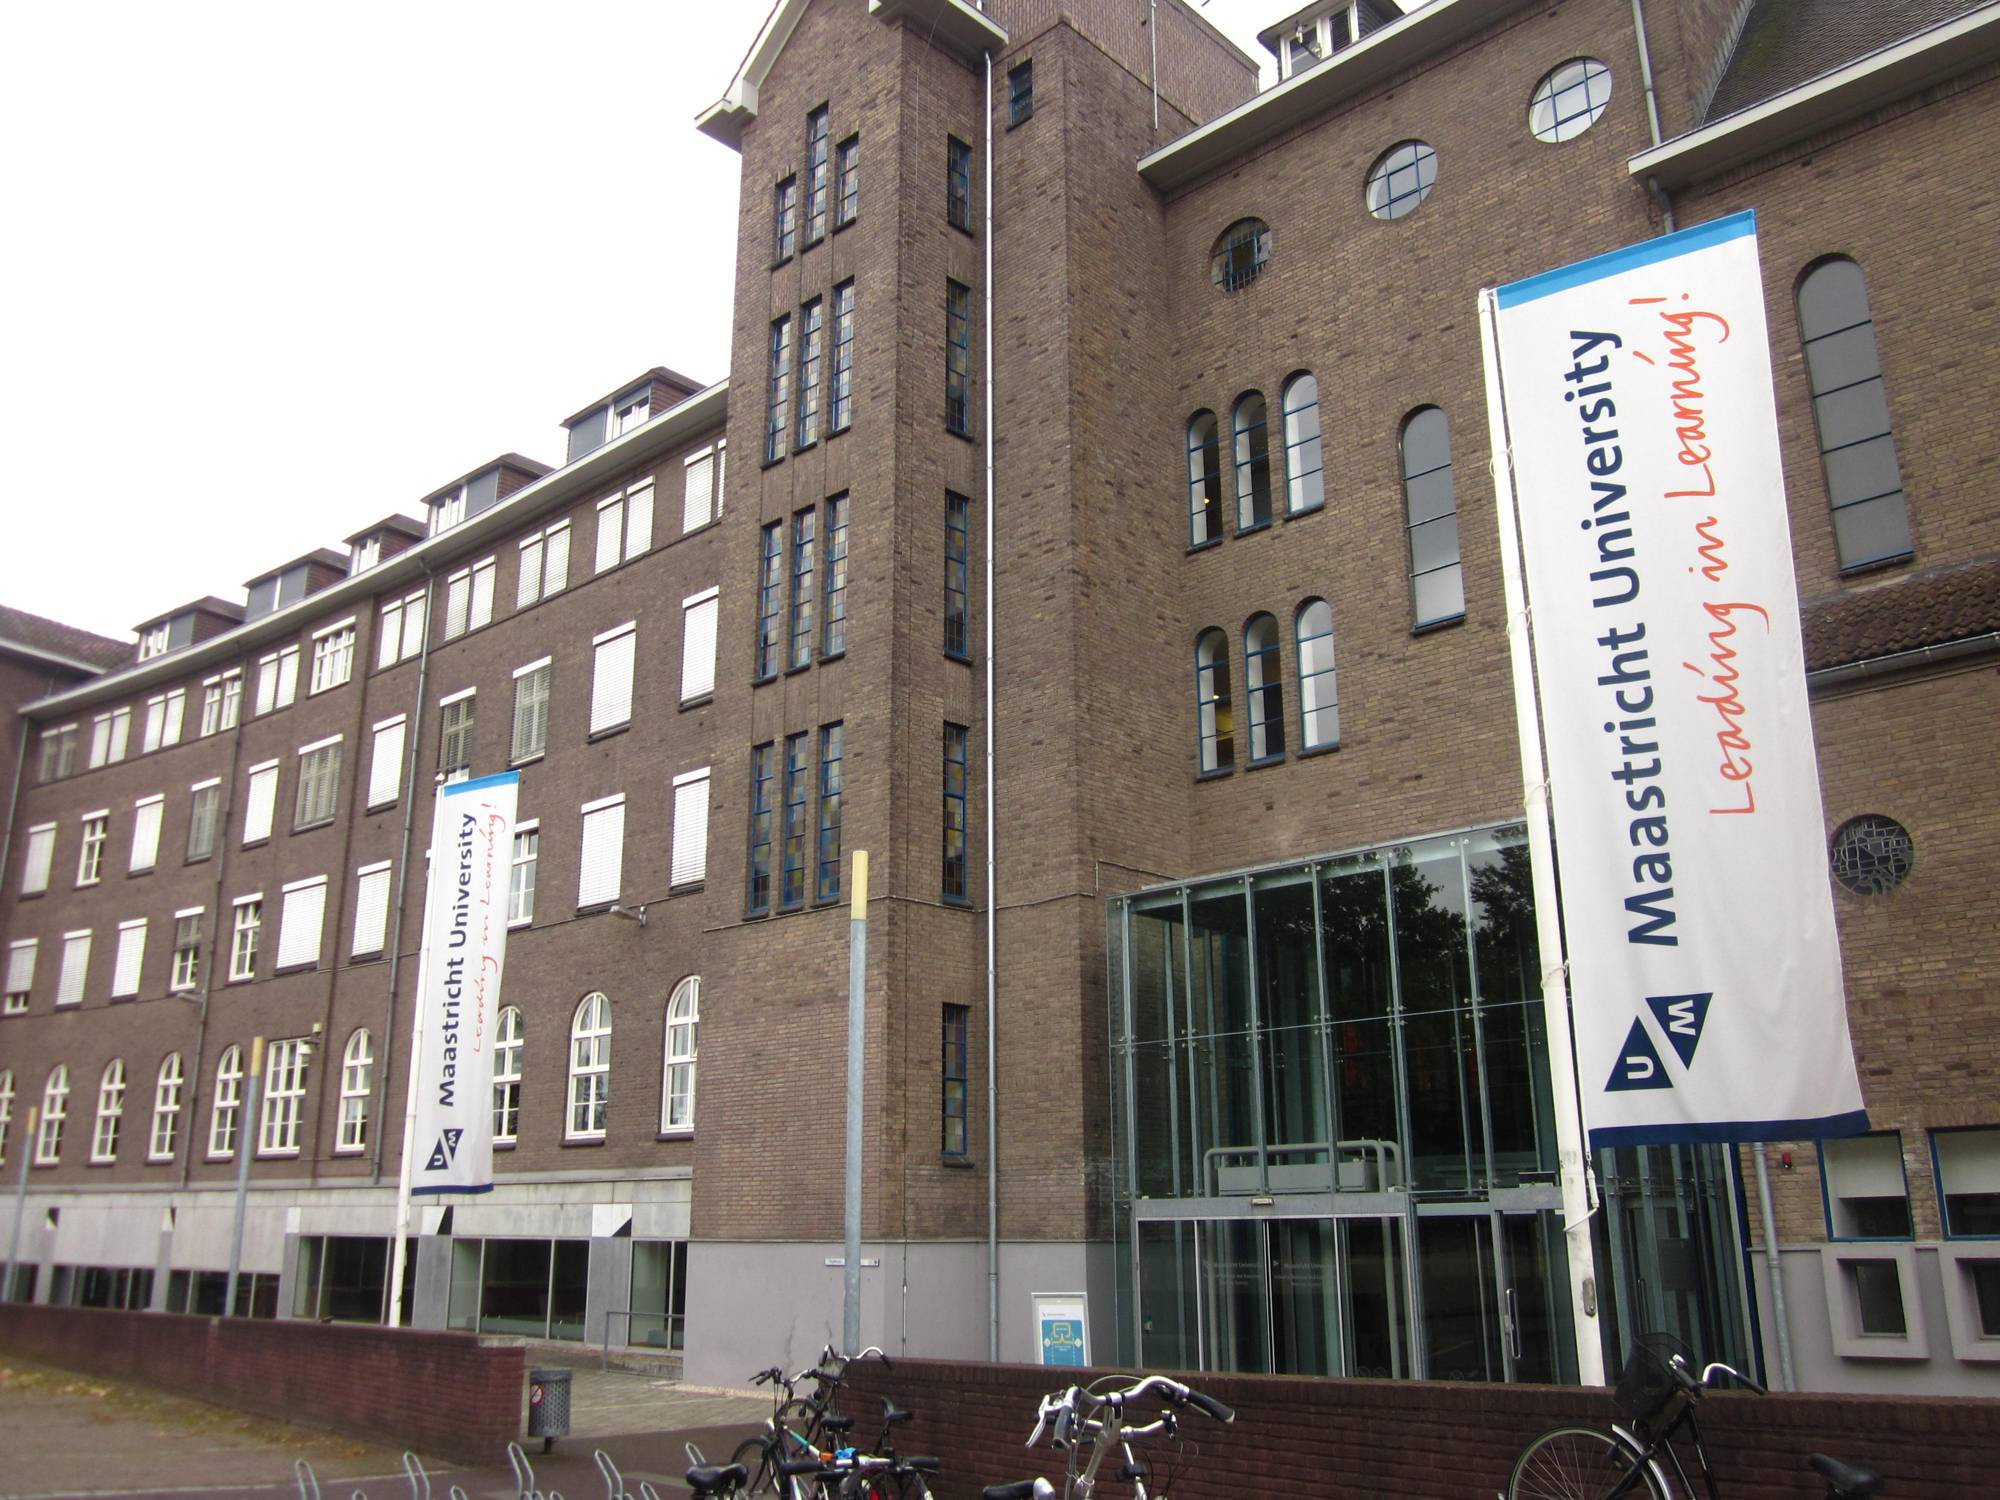 vpn connector maastricht university